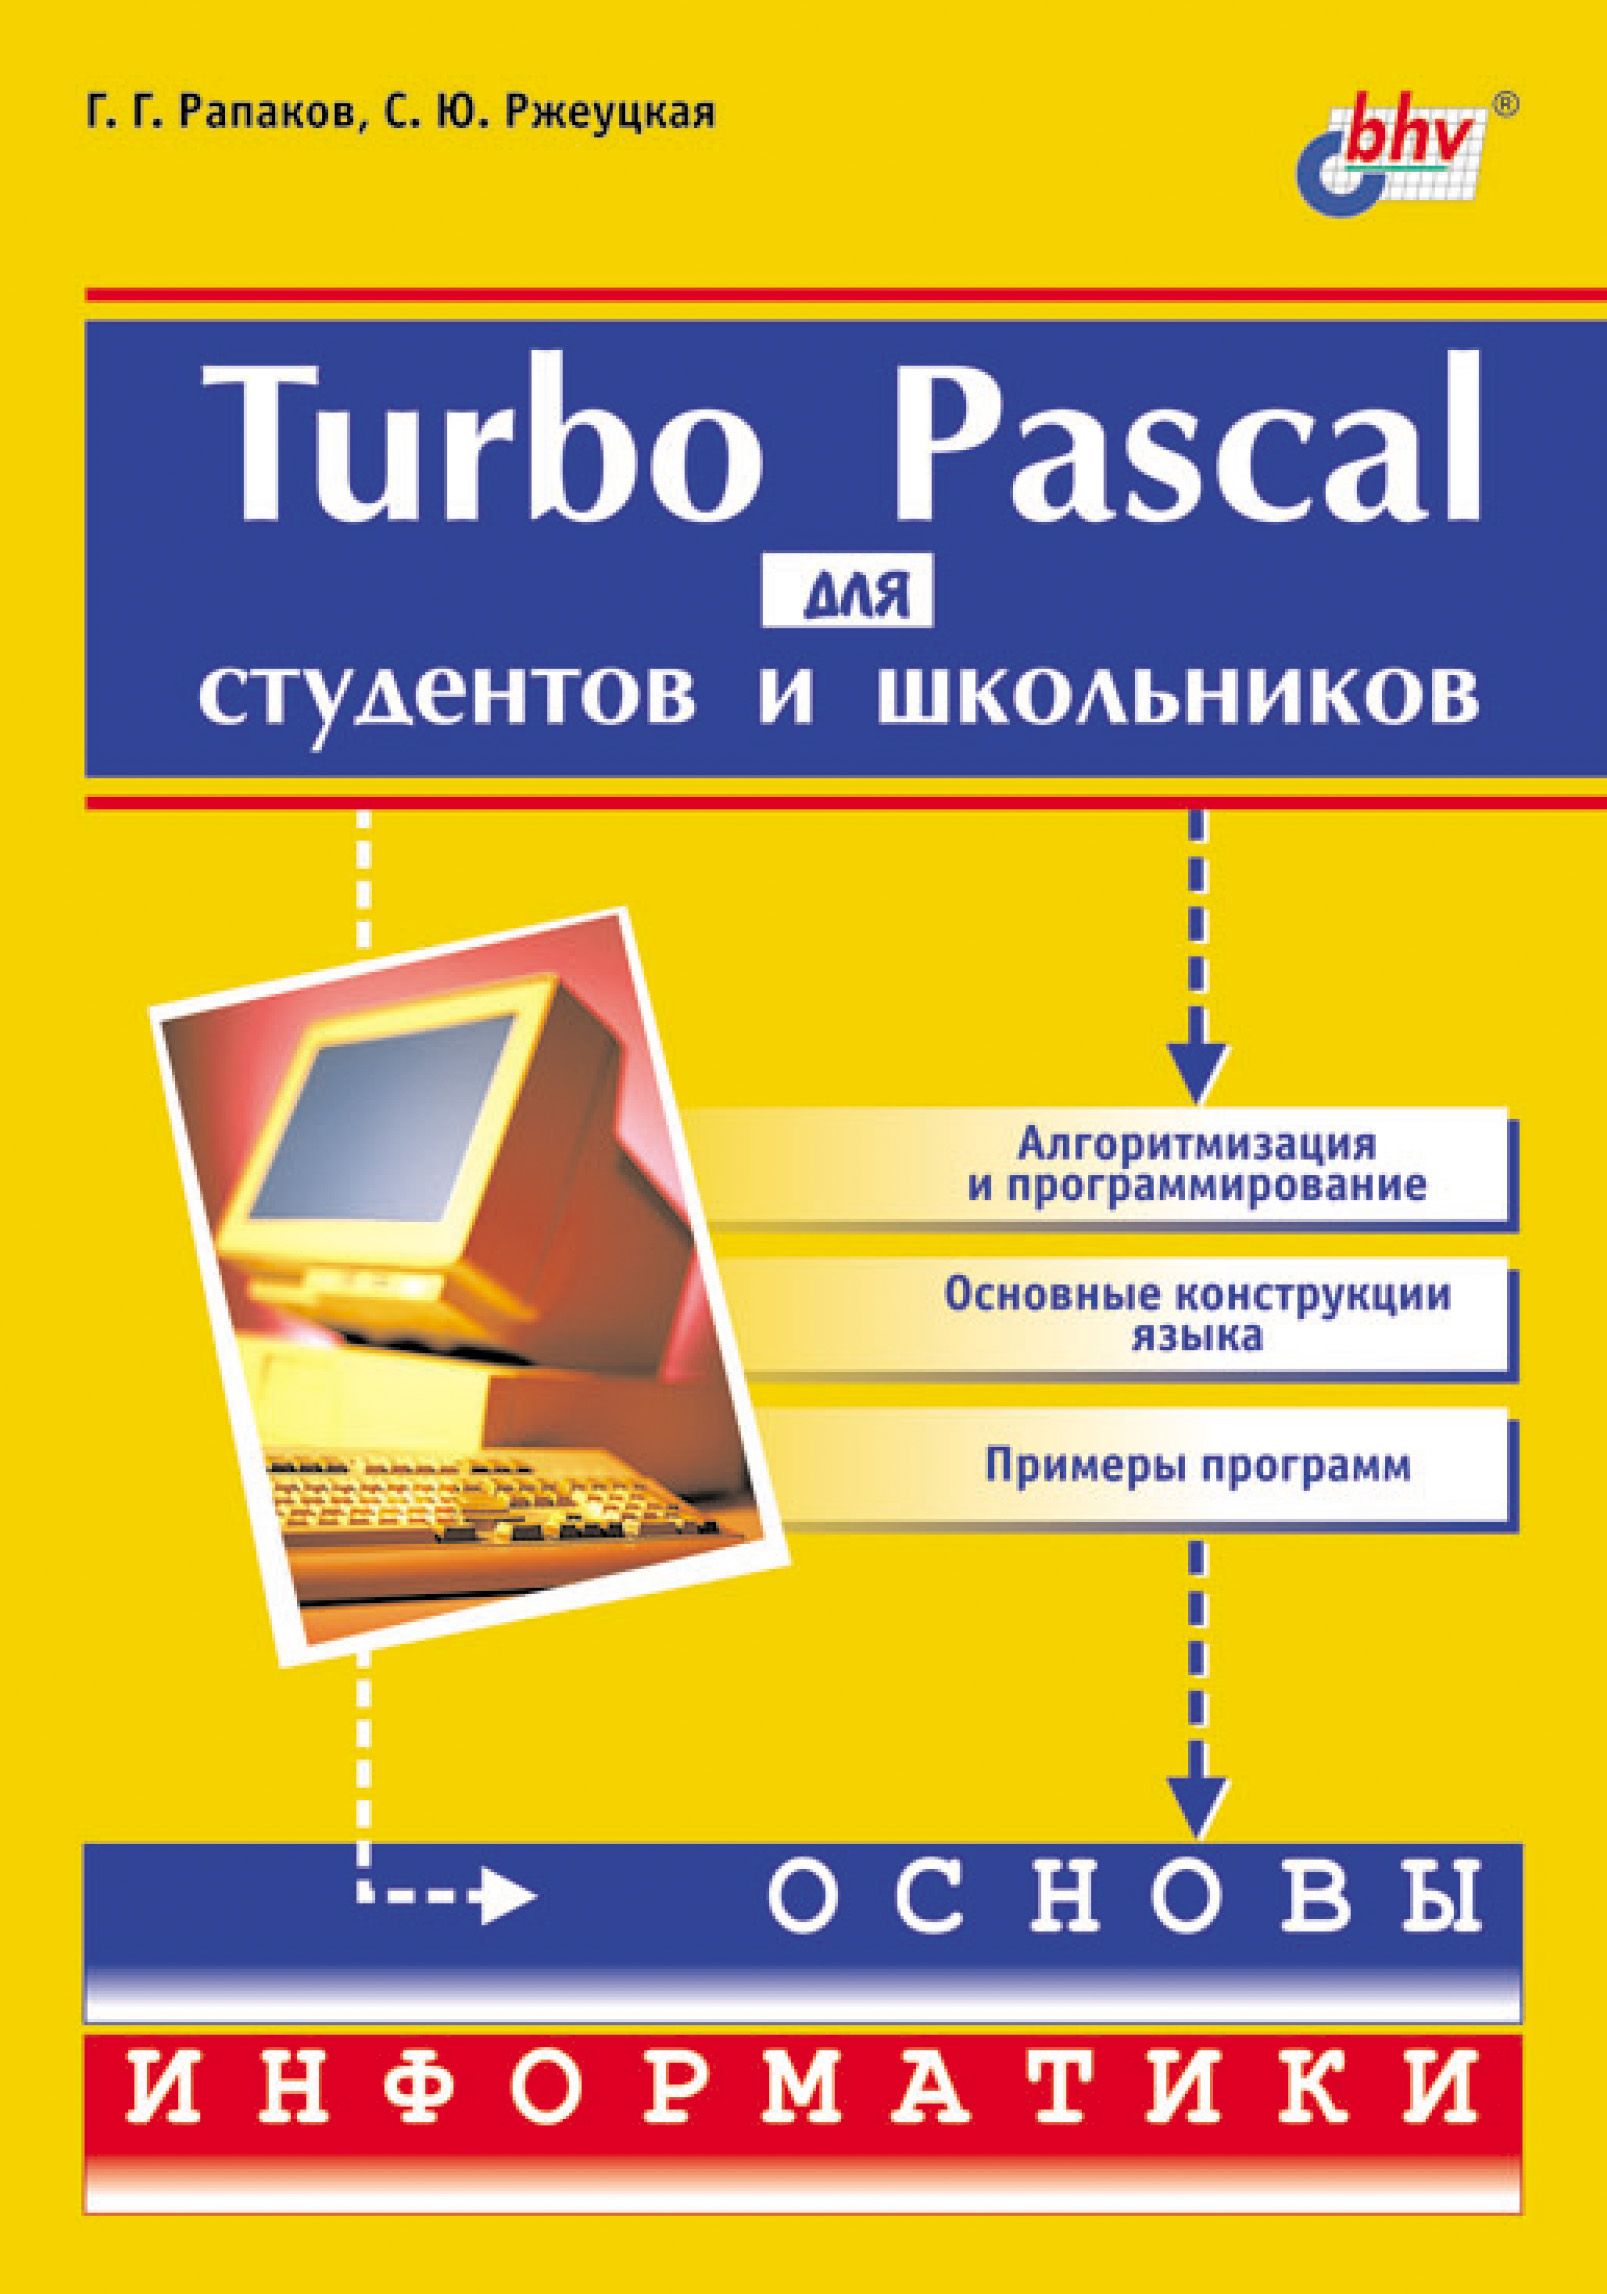 Книга  Turbo Pascal для студентов и школьников созданная Г. Г. Рапаков, С. Ю. Ржеуцкая может относится к жанру программирование, учебная литература. Стоимость электронной книги Turbo Pascal для студентов и школьников с идентификатором 6986271 составляет 247.00 руб.